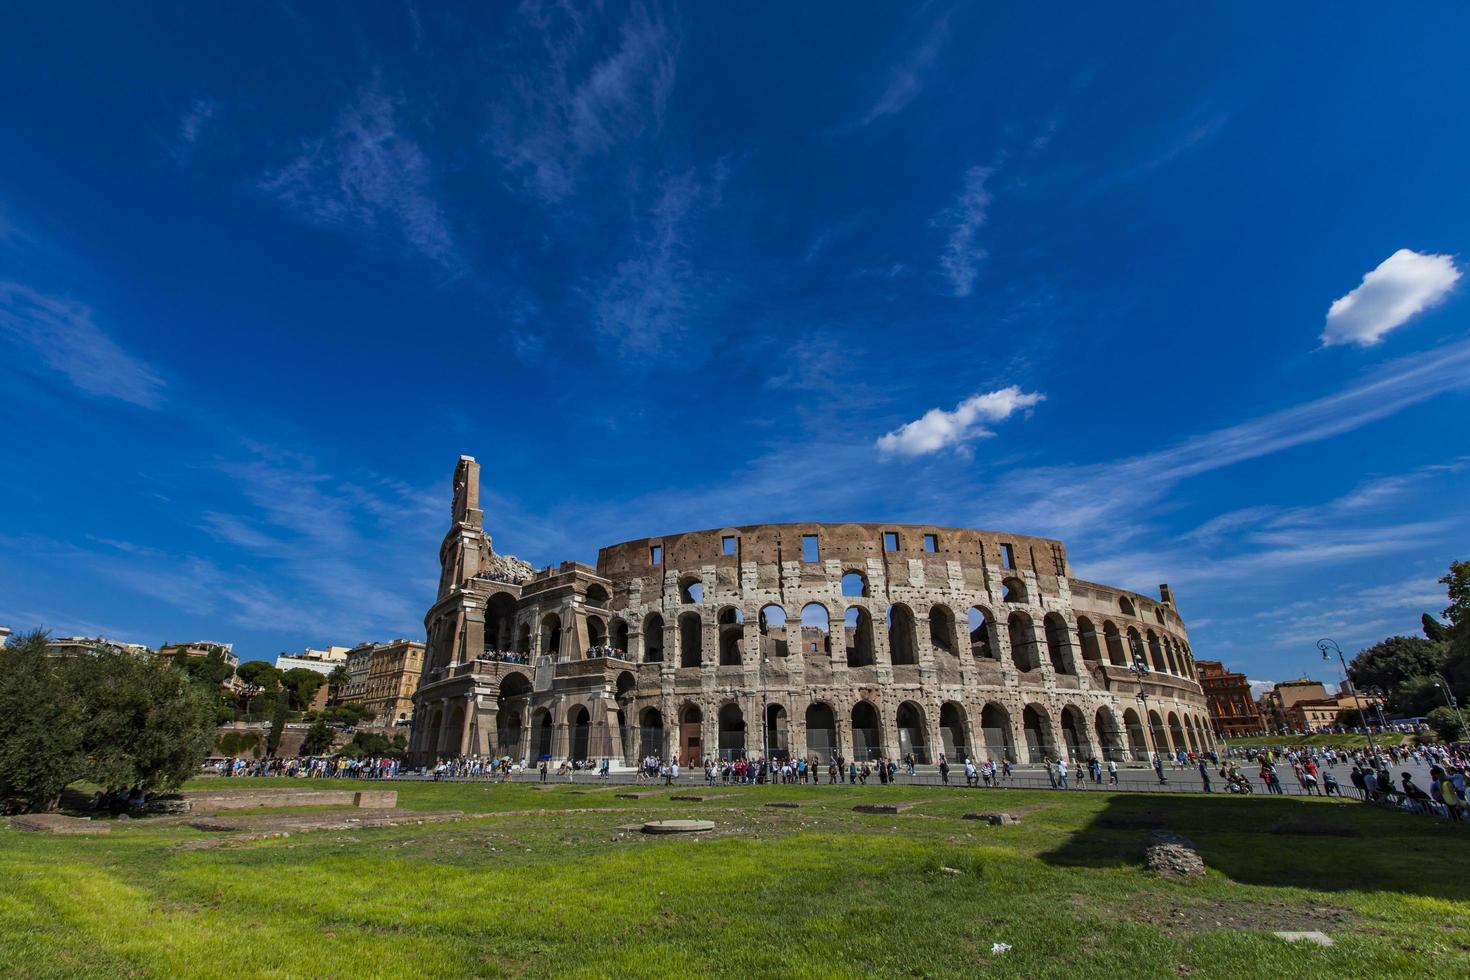 Roma, Italia, 24 de septiembre de 2016 - Personas no identificadas por el Coliseo en Roma, Italia. Fue inaugurado en el año 80 d.C. y es el anfiteatro más grande jamás construido. foto